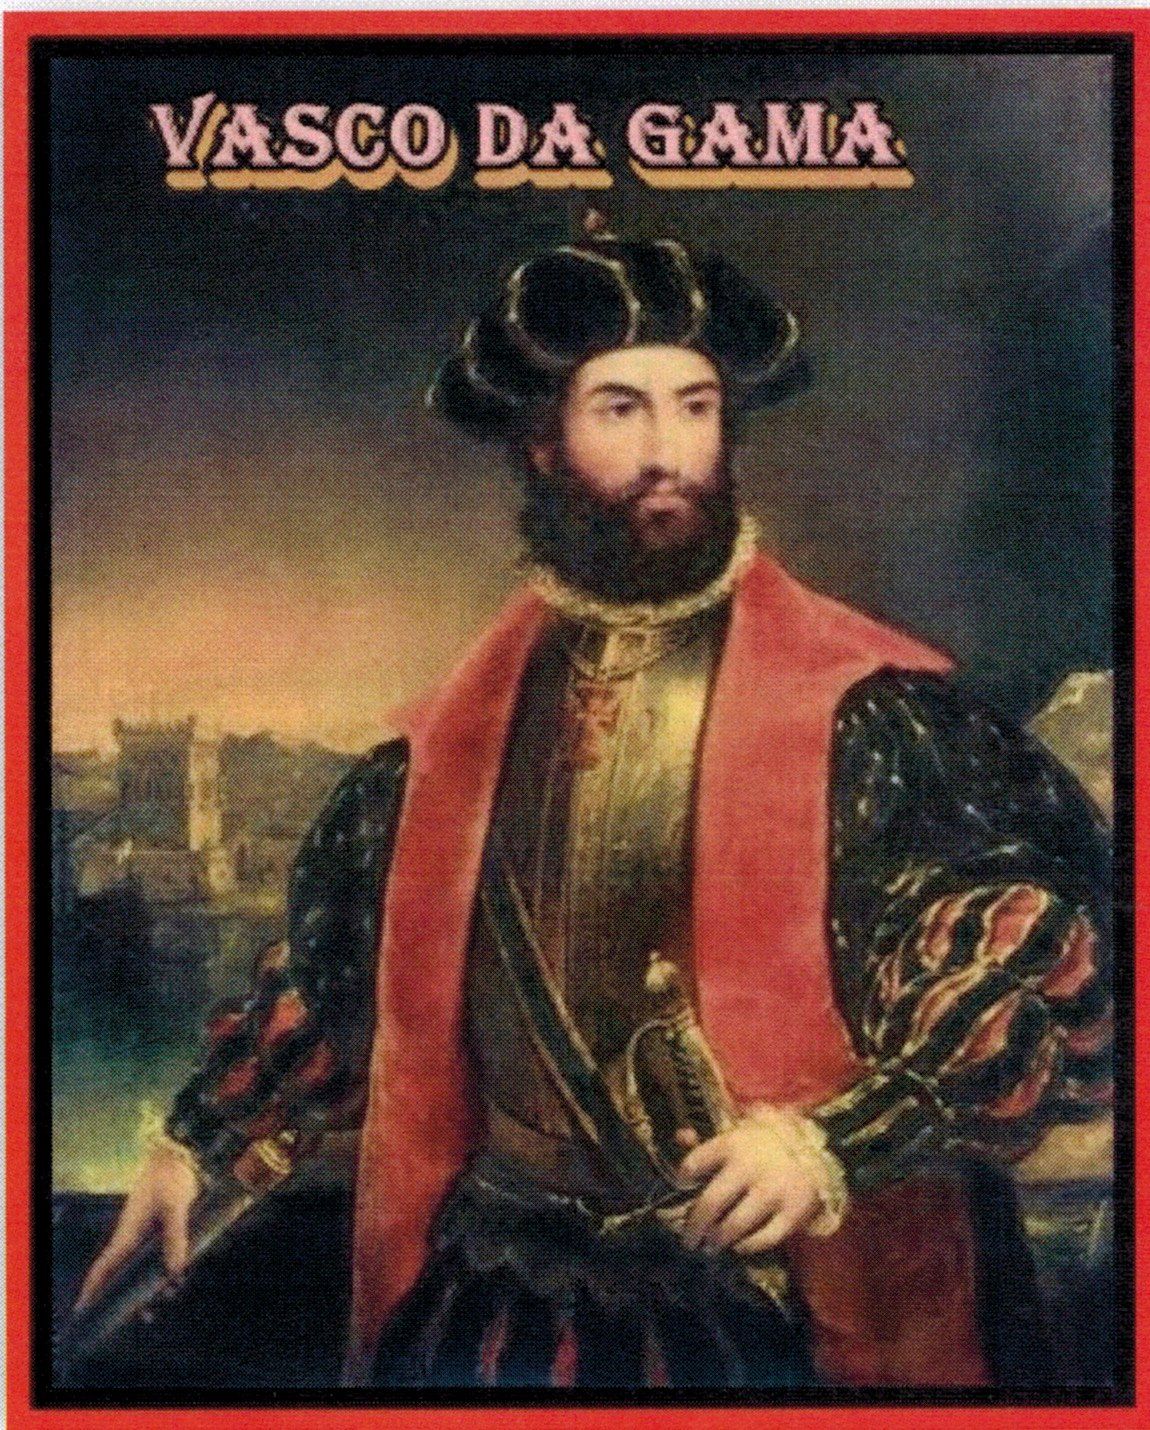 The monster that was Vasco da Gama